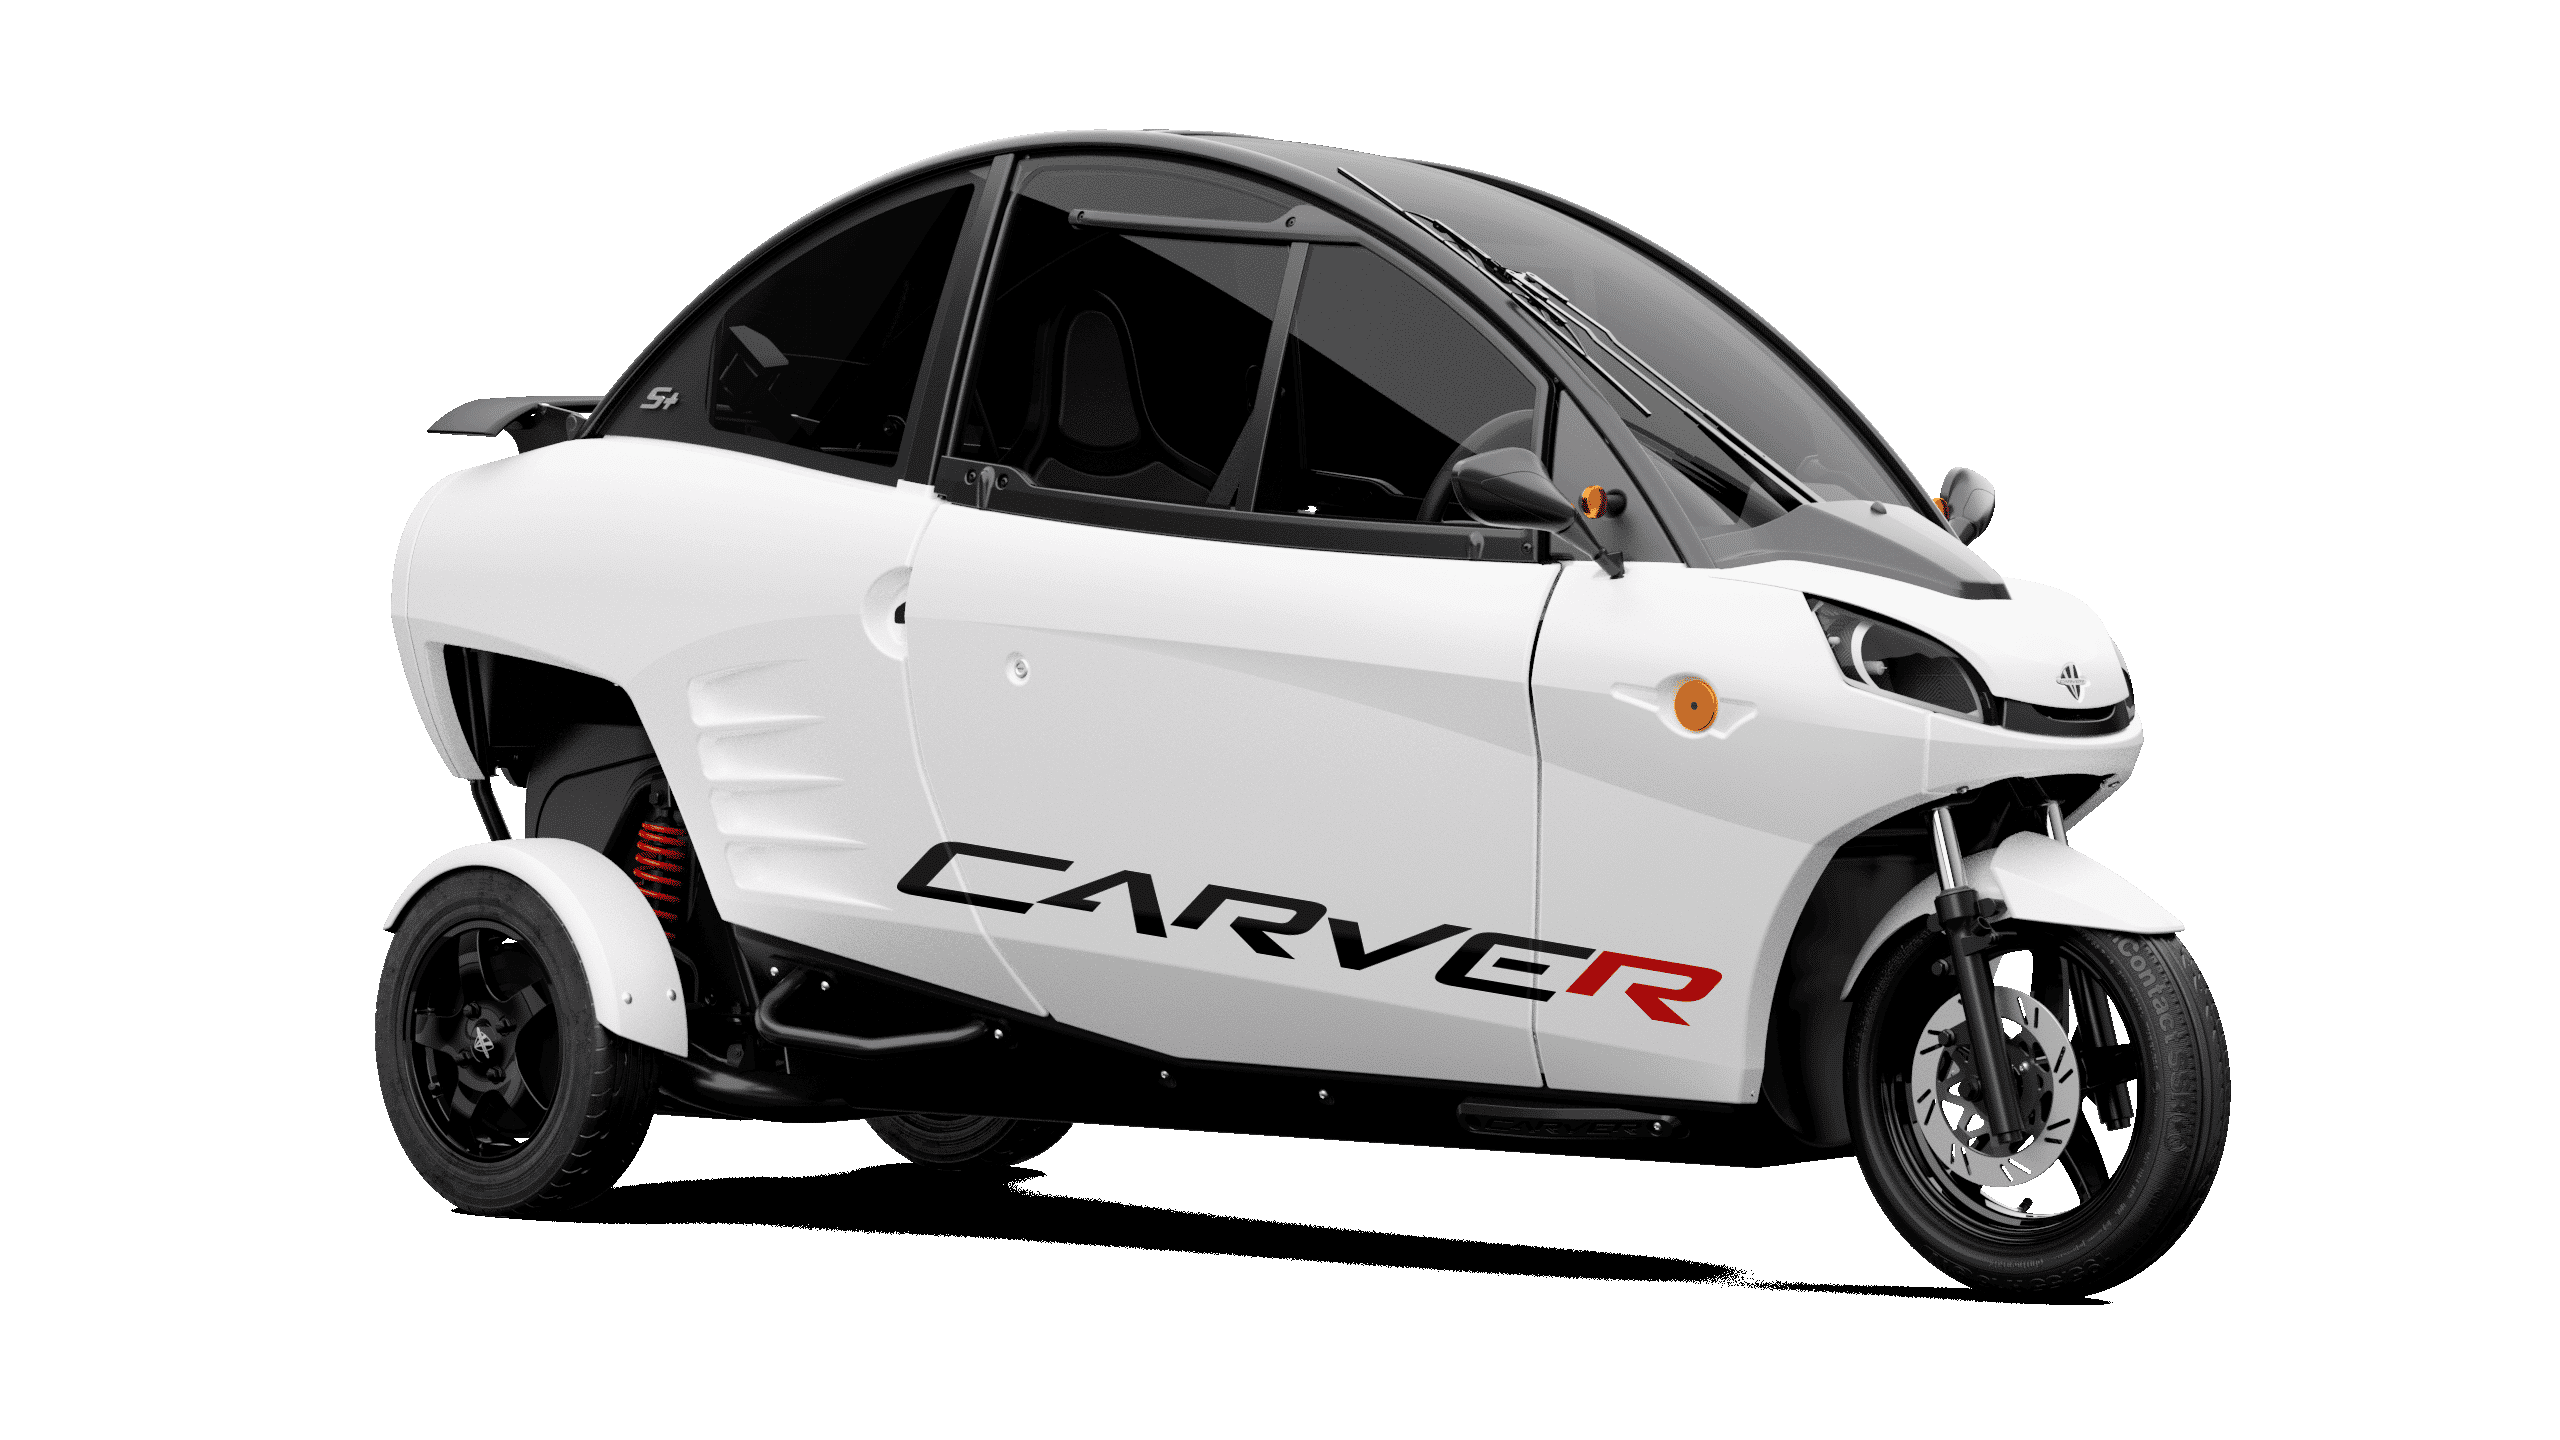 Discover the Carver - Carver